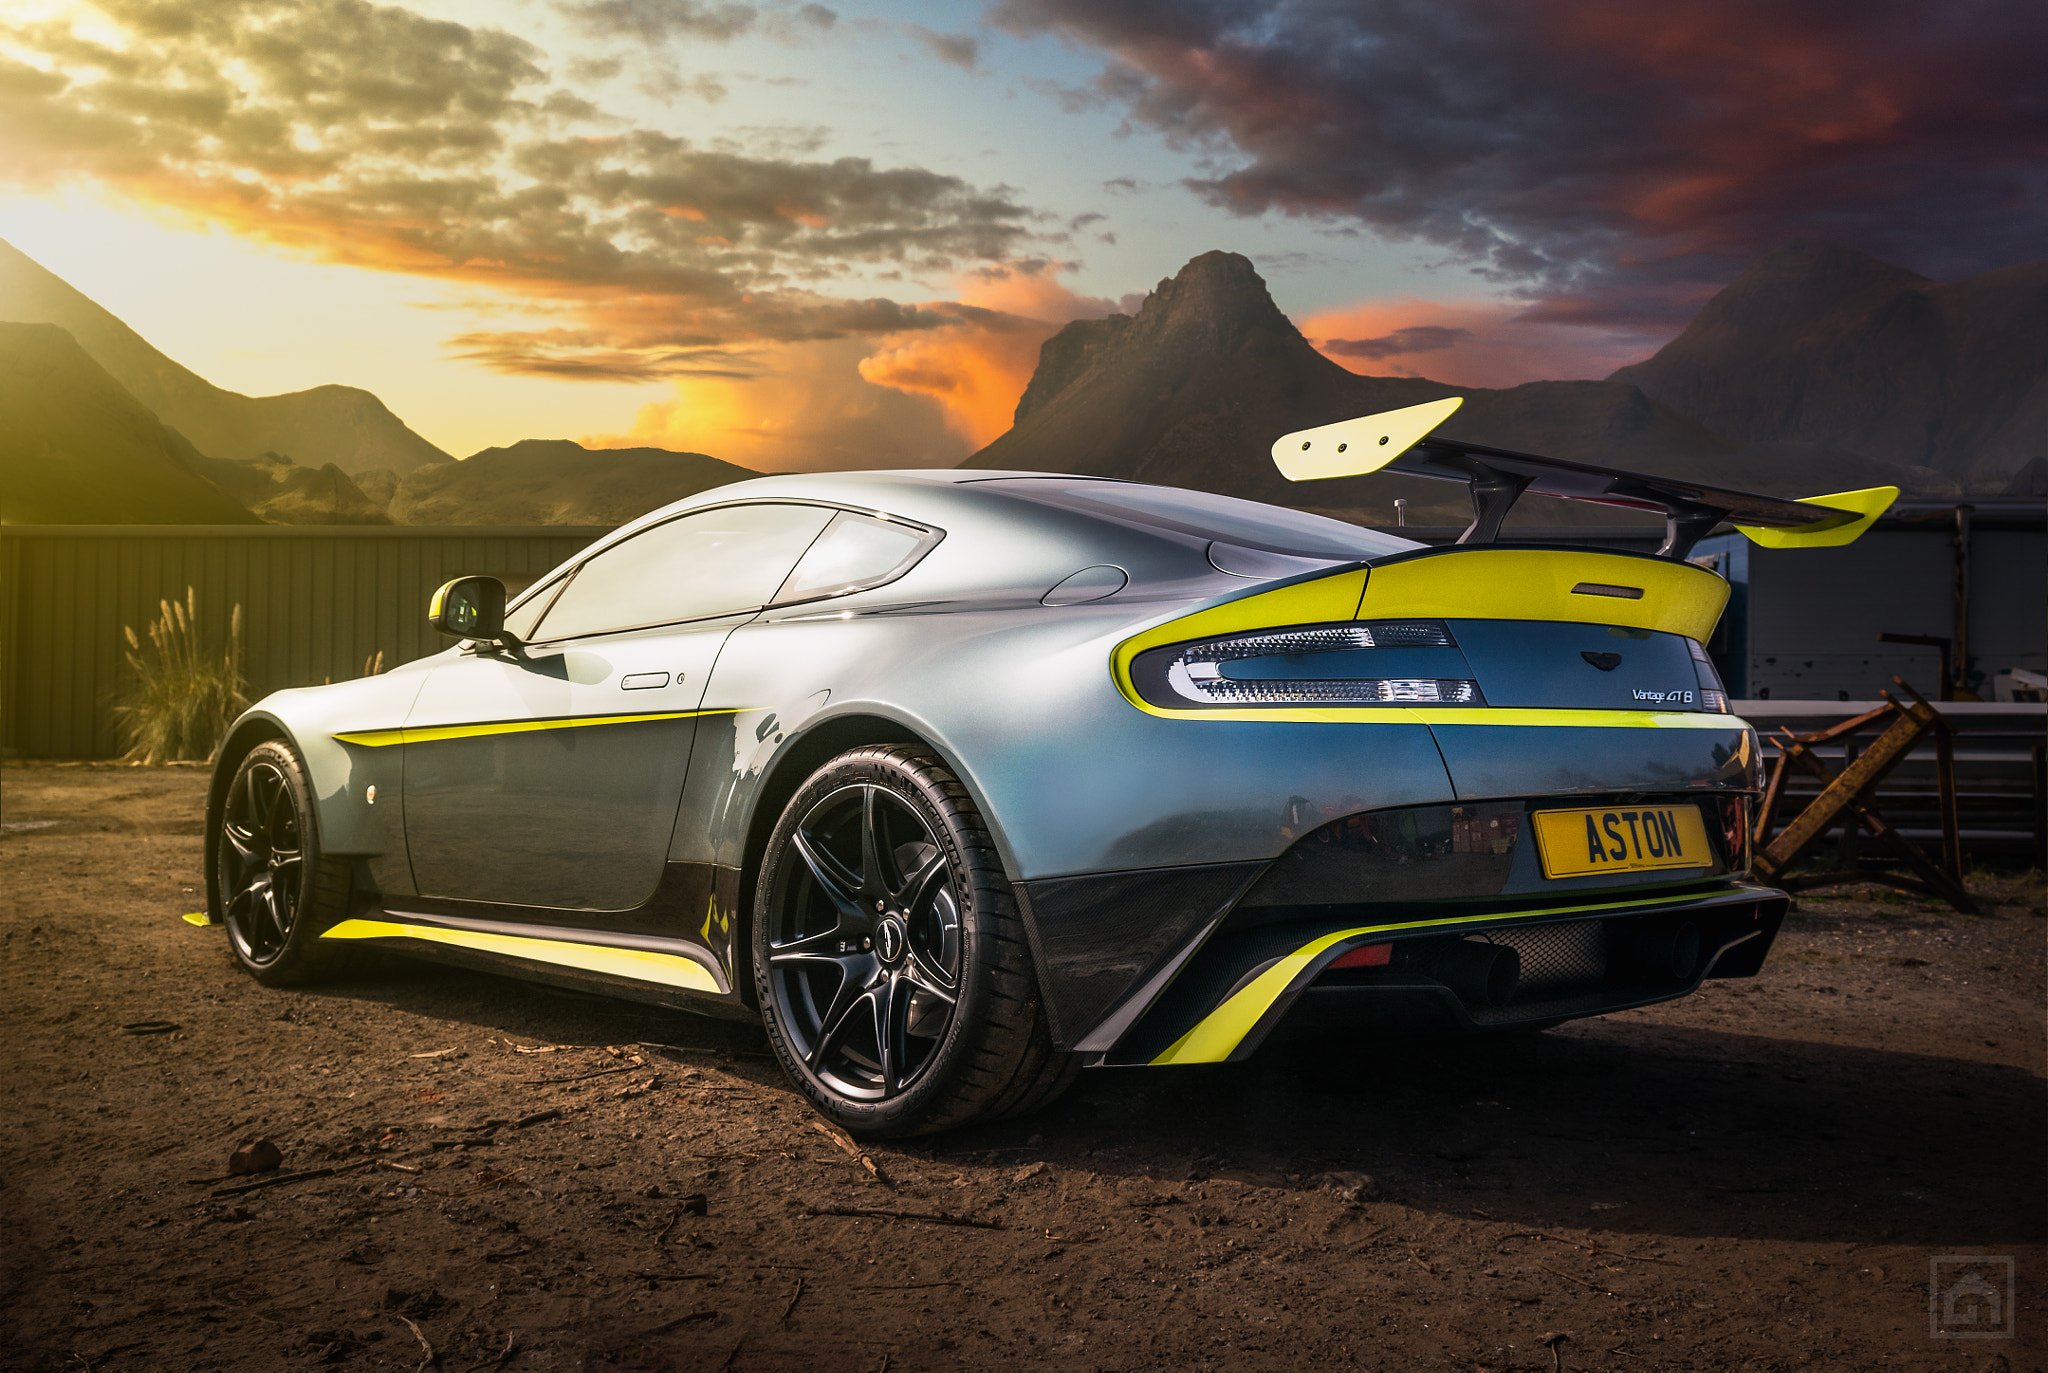 Télécharger des fonds d'écran Aston Martin Vantage Gt8 HD